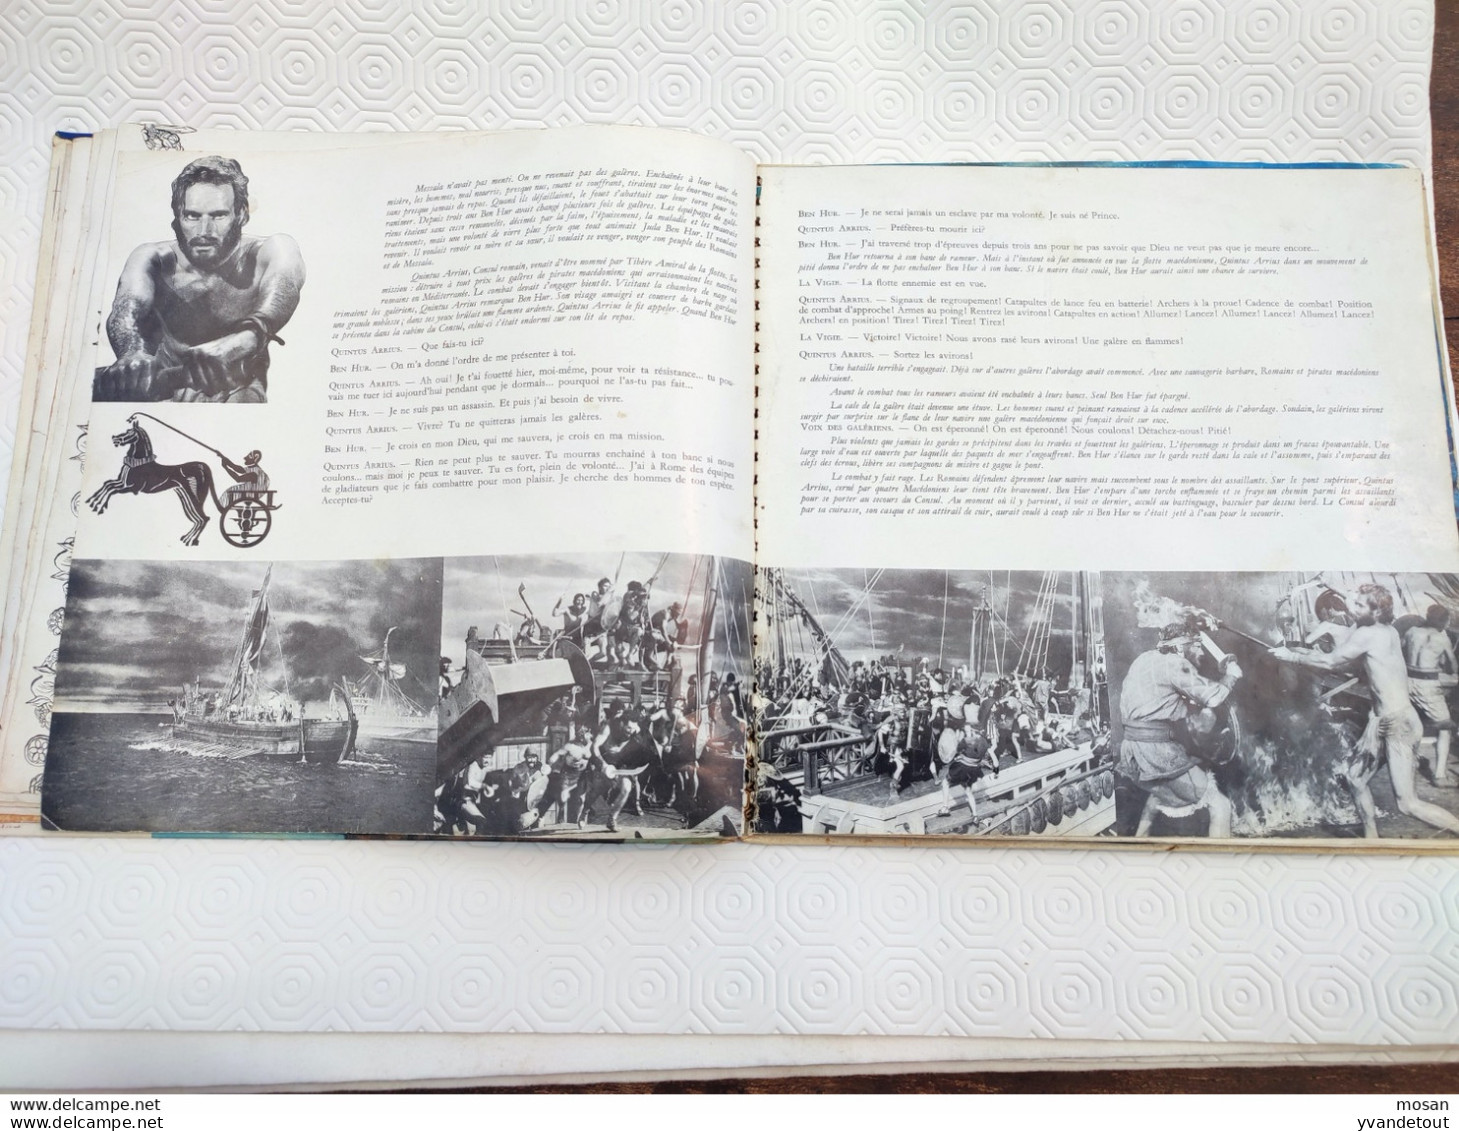 Ben-Hur raconté par Jean Desailly avec Serge Reggiani/ William Wyler. Livret + 2 disques